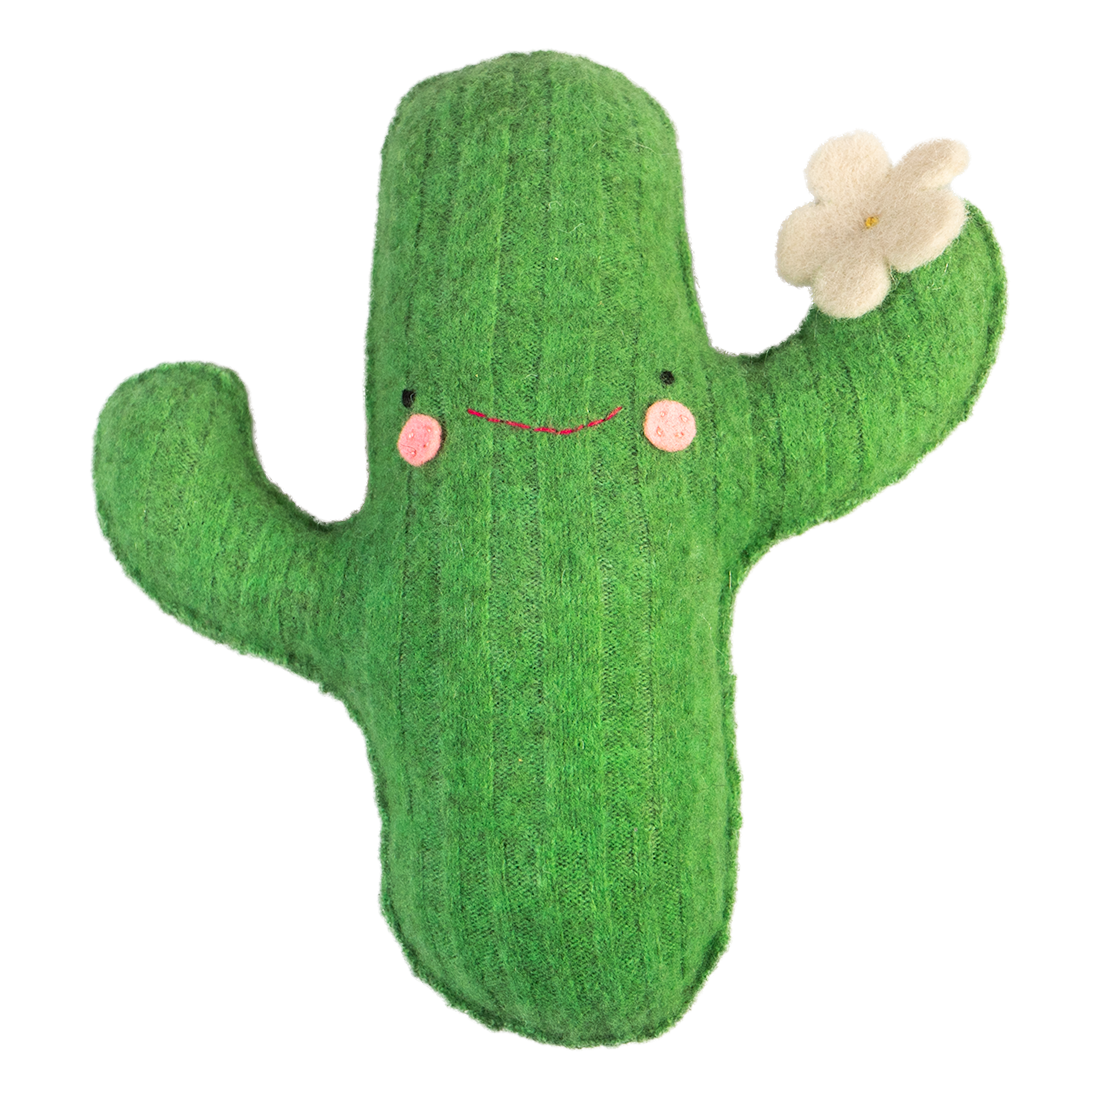 Cactus sweater plush